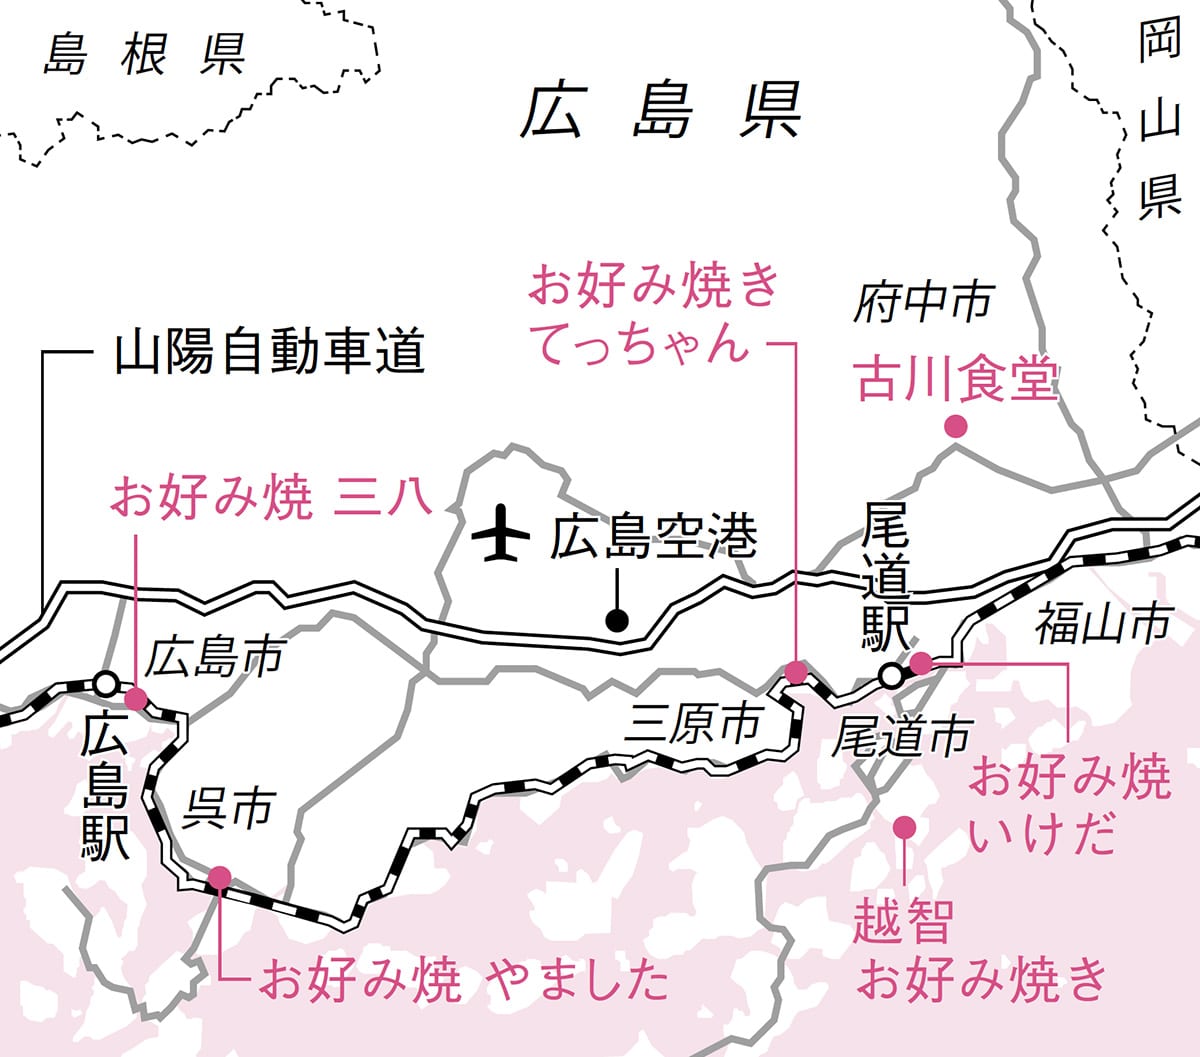 広島県 お好み焼き屋 地図